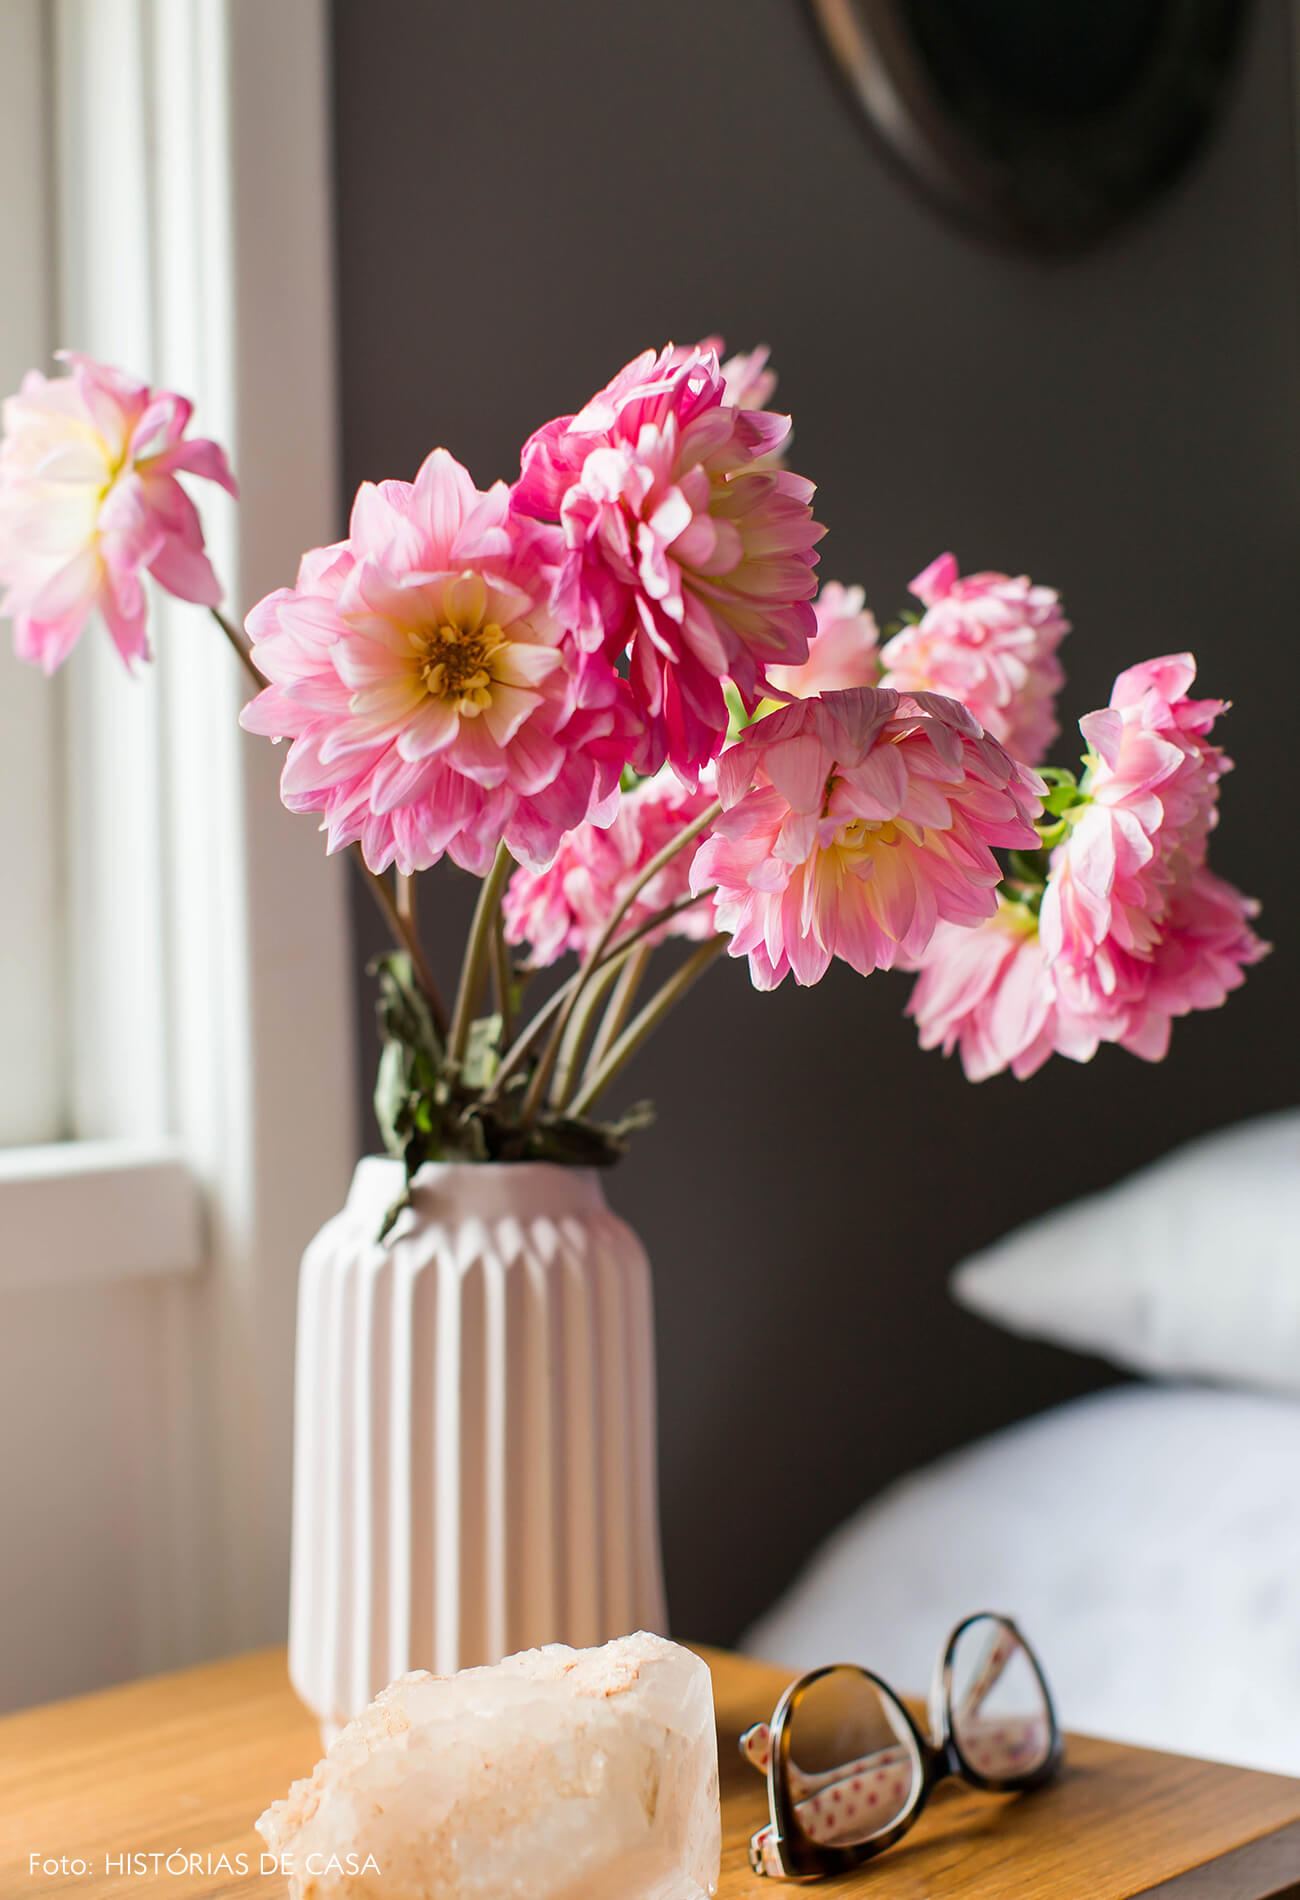 Vaso rosa claro com arranjo de flores